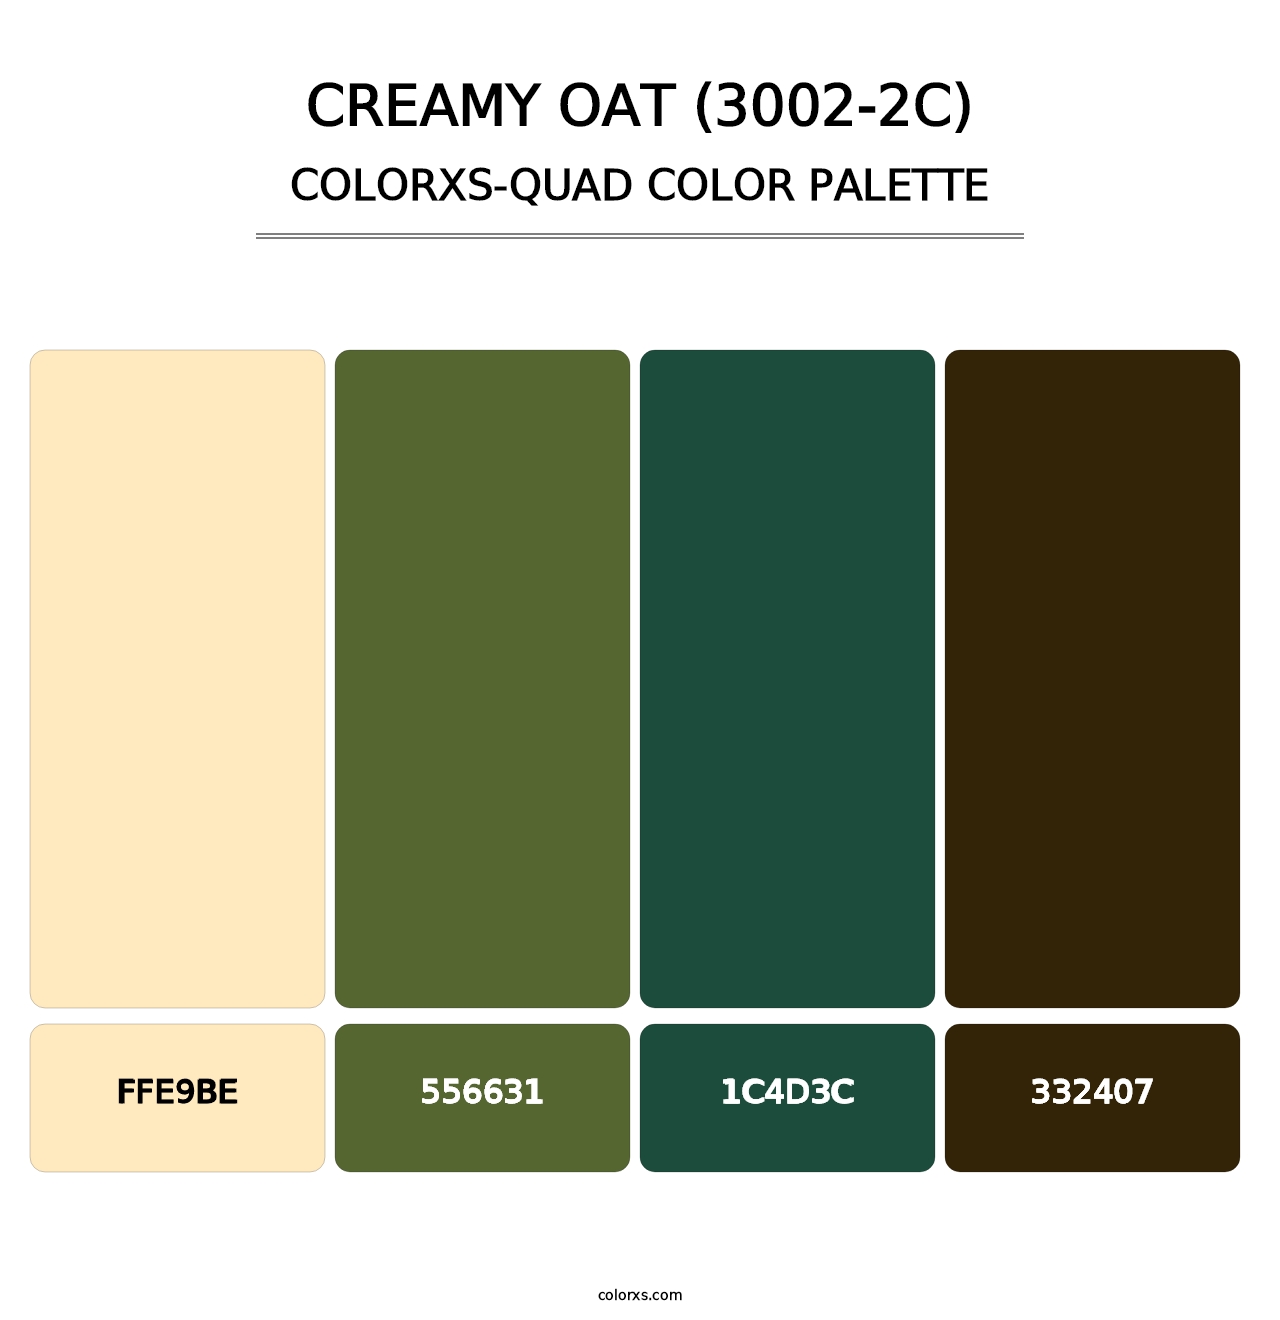 Creamy Oat (3002-2C) - Colorxs Quad Palette